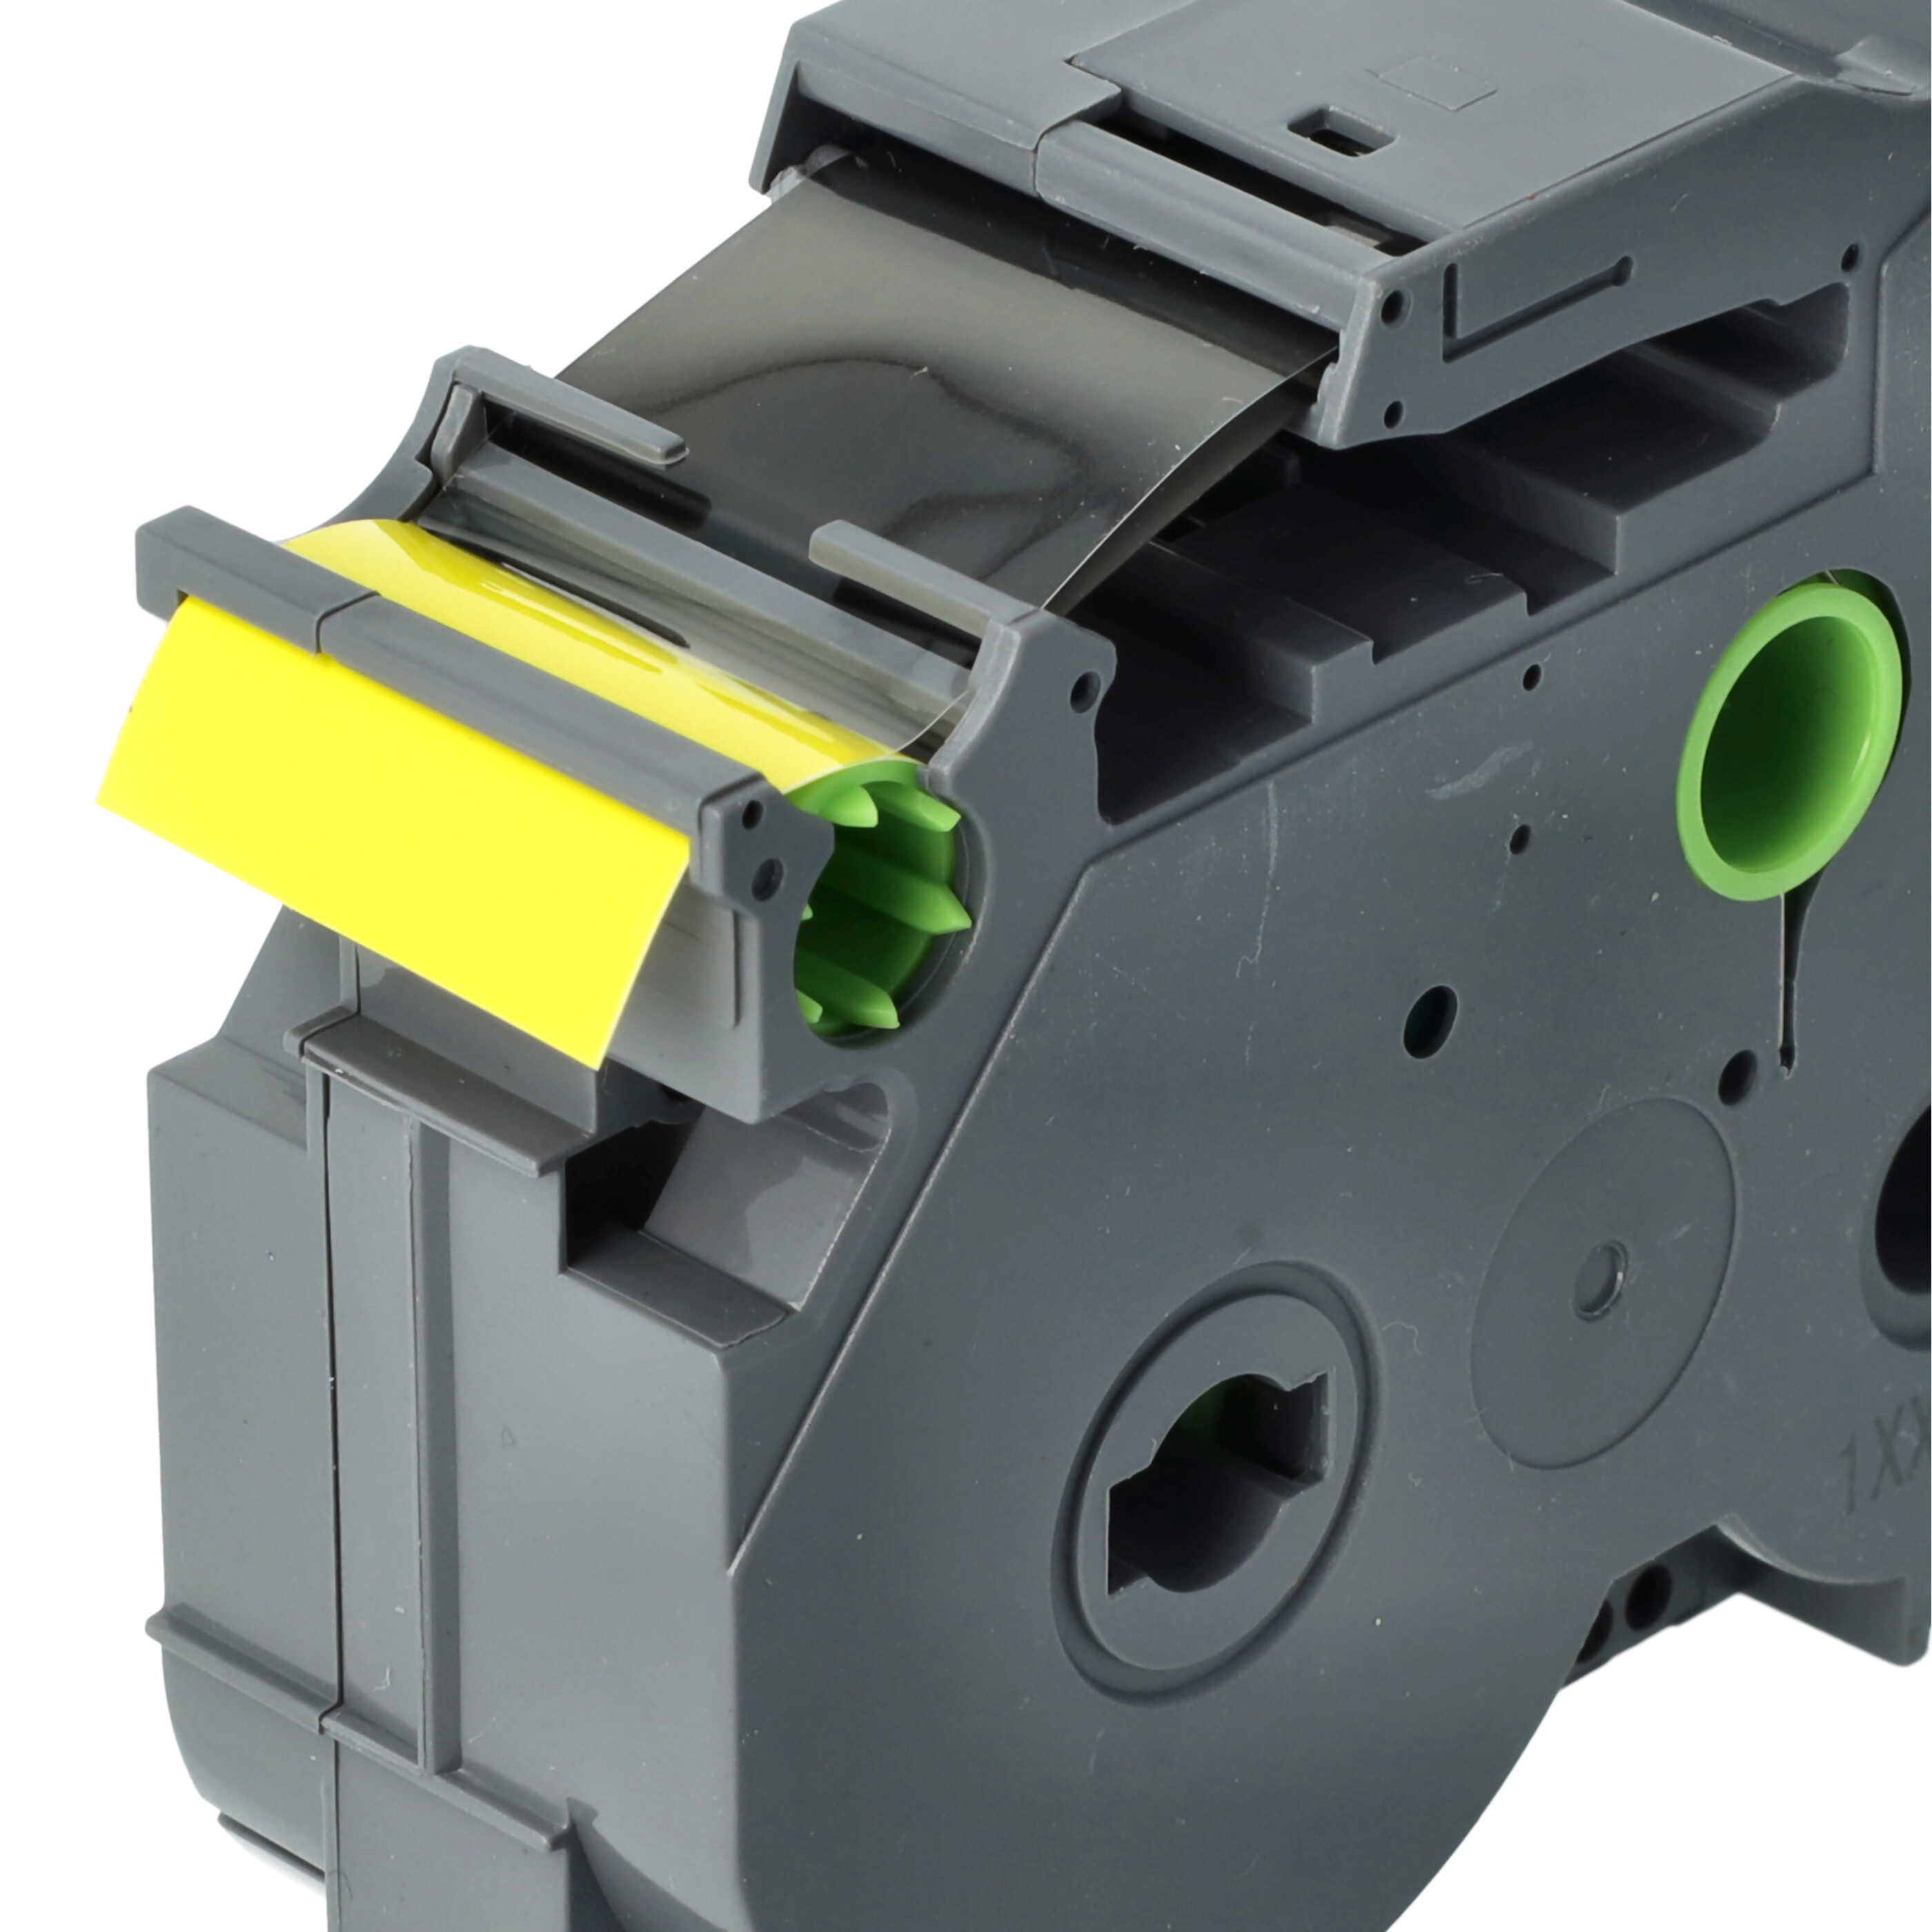 Cassetta nastro sostituisce Brother TZE-FX651 per etichettatrice Brother 24mm nero su giallo, flessibile